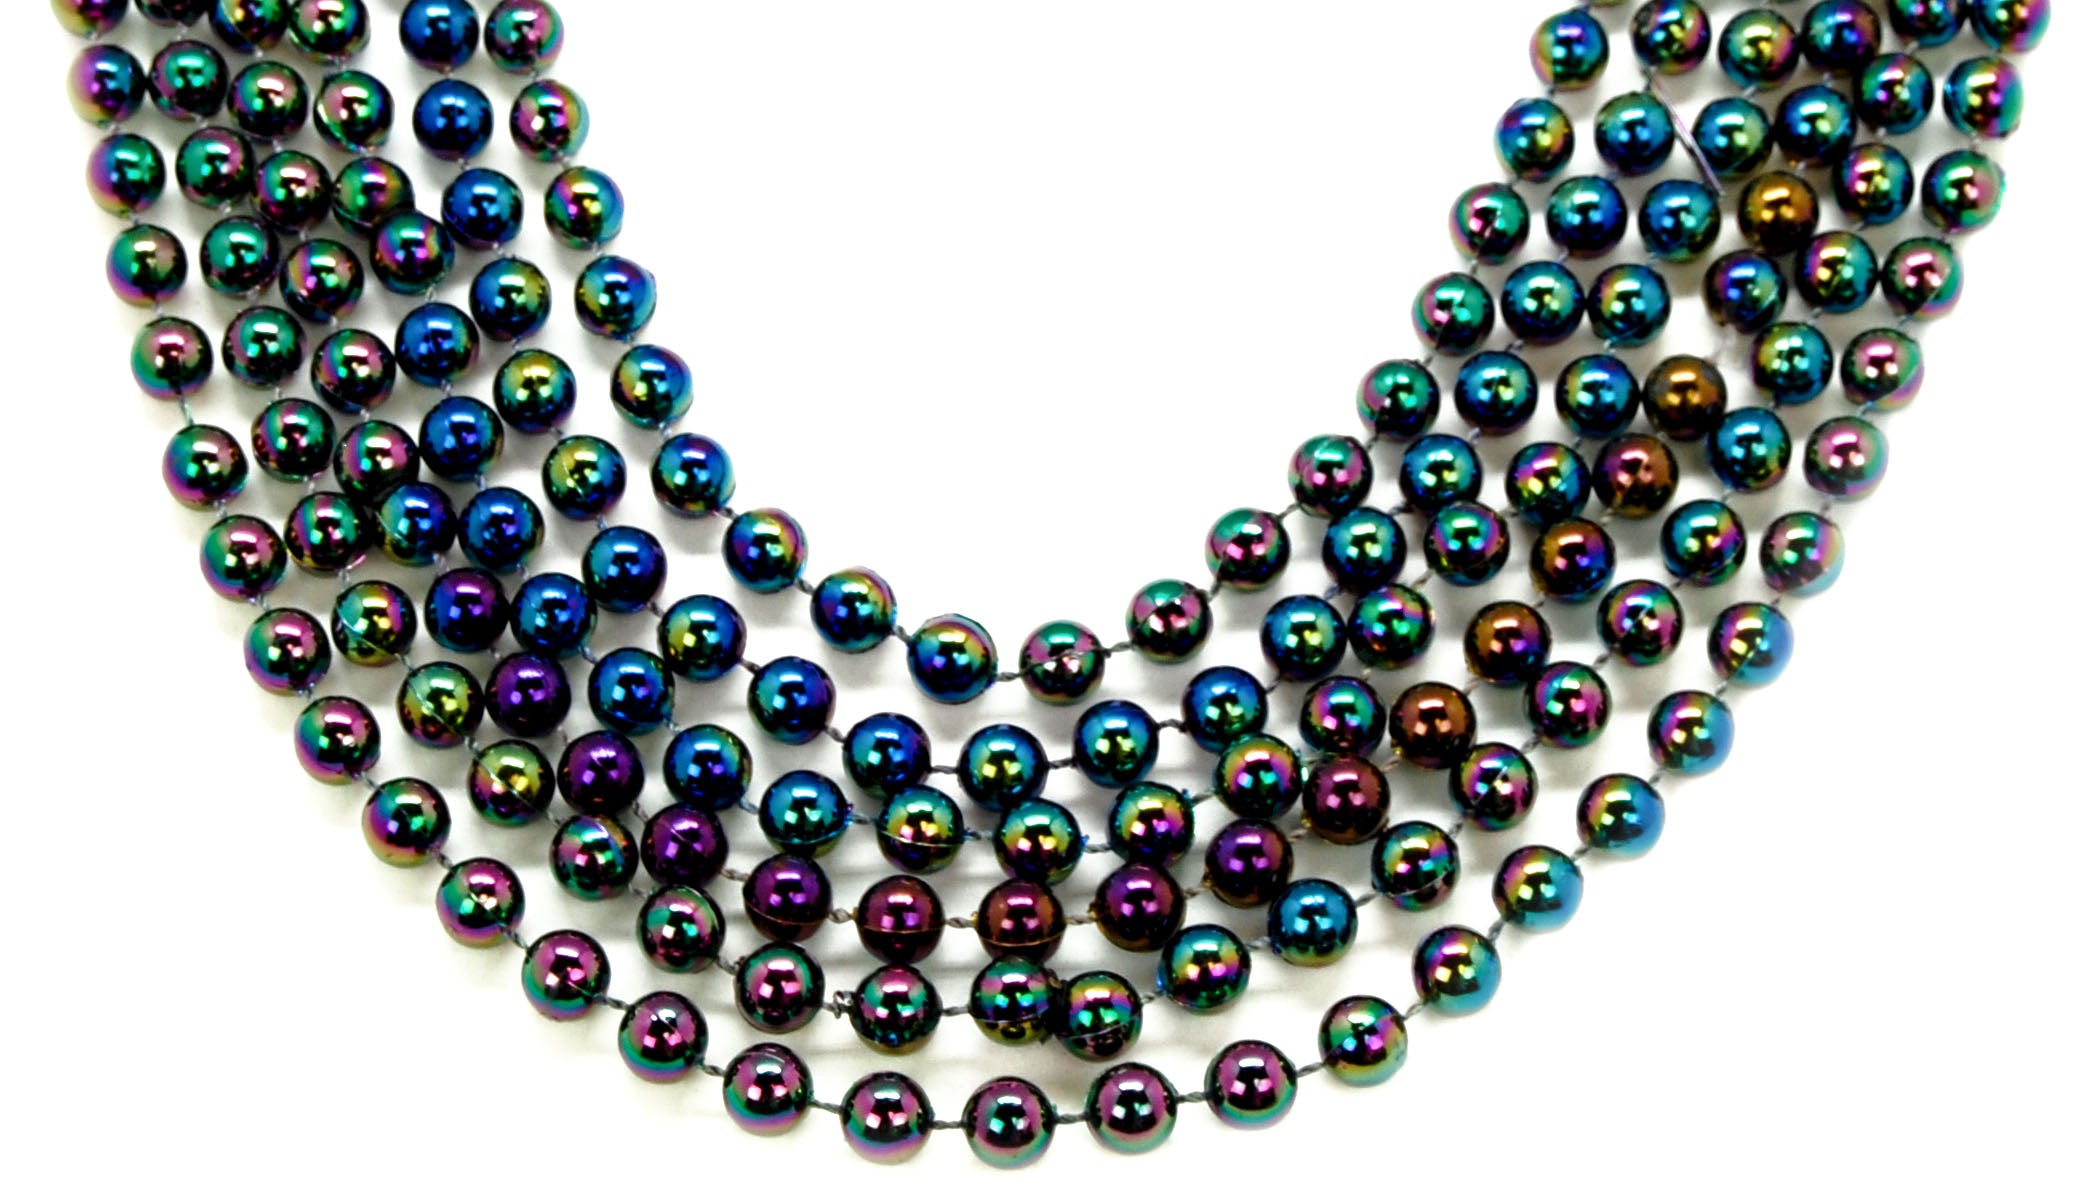 42" 10mm Round Iridescent Black Beads